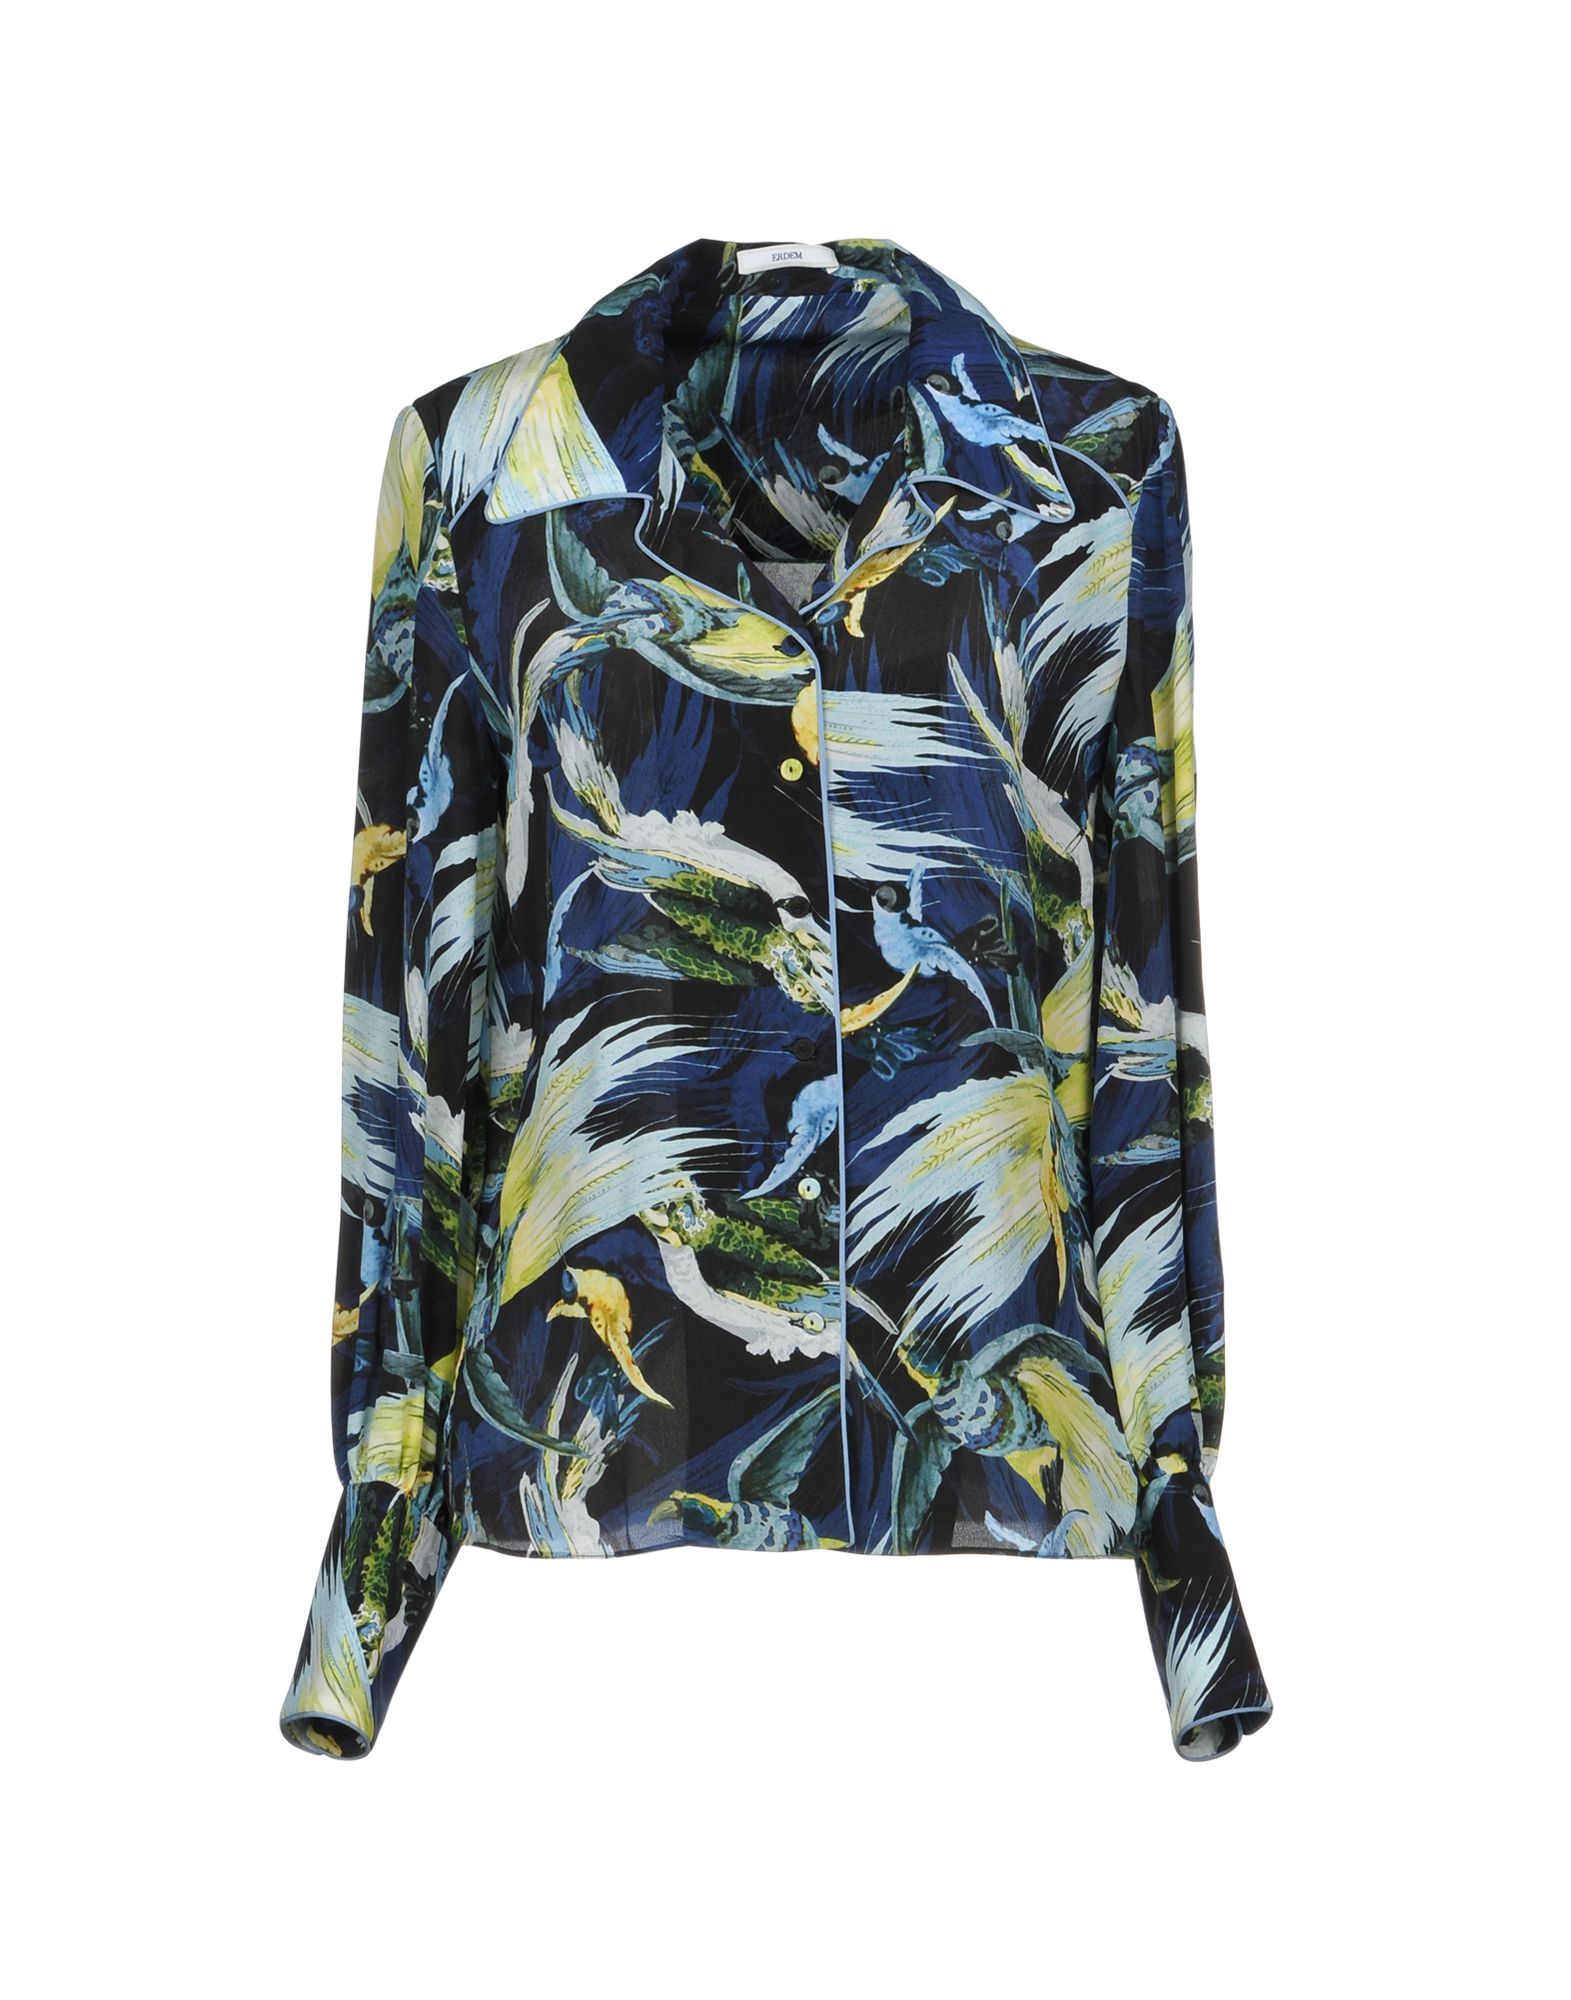 ERDEM Floral shirts & blouses,38746276ST 6